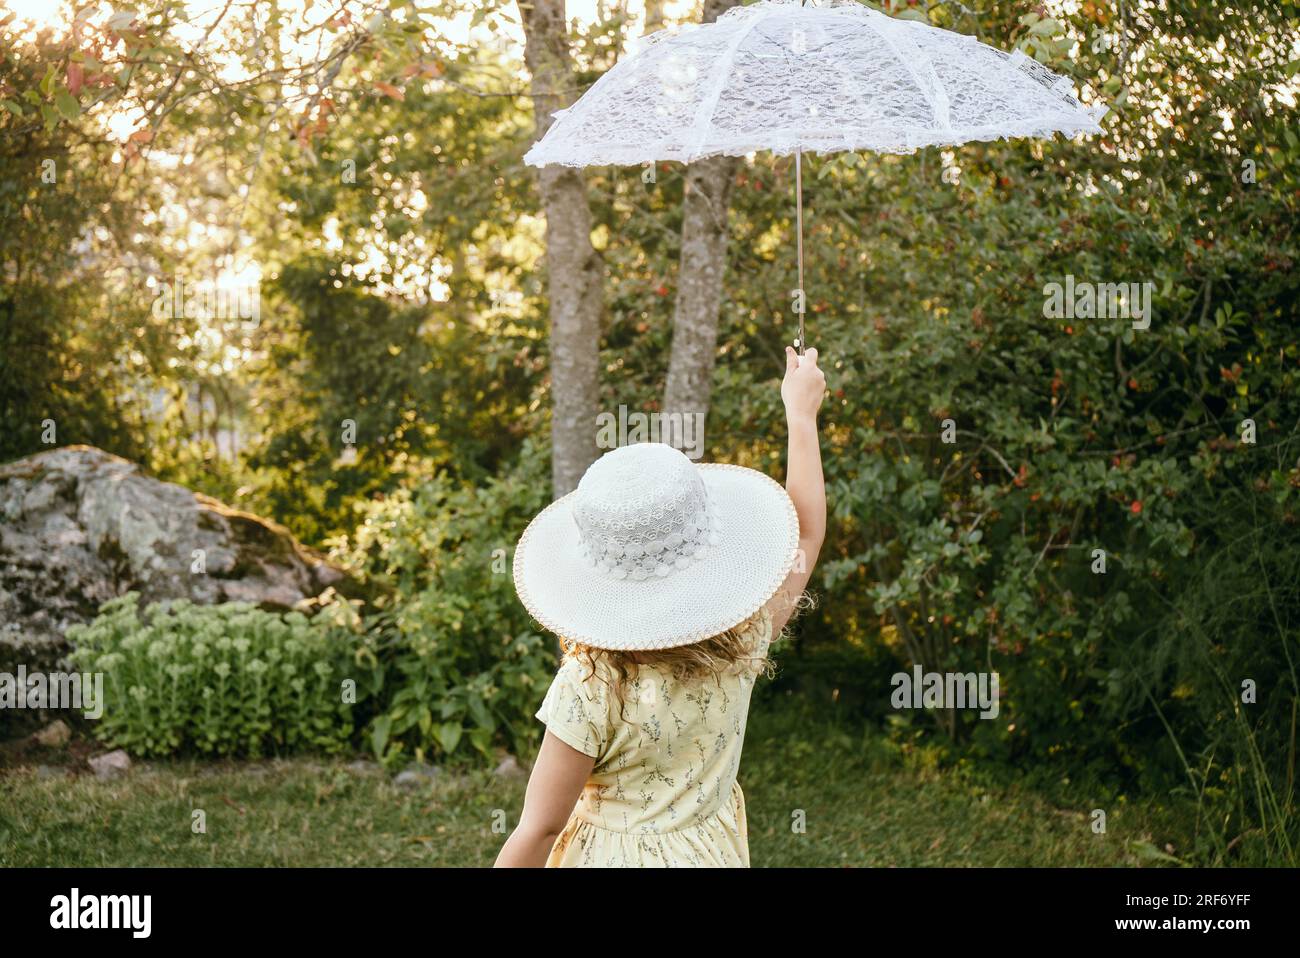 La bambina tiene in mano un ombrellone bianco in pizzo in una bella serata di sole nella natura. Concetto di aspirazioni da sogno. Foto Stock